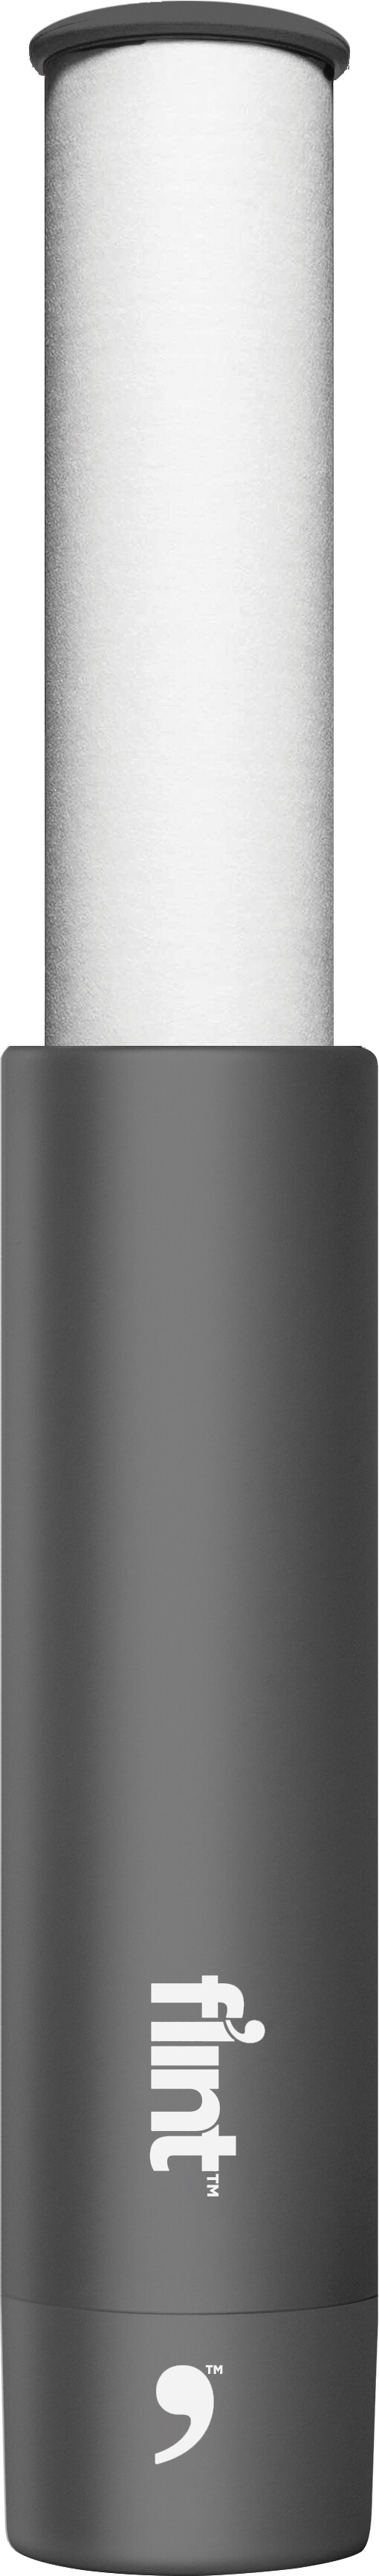 Flint lint roller - metallics slate gray